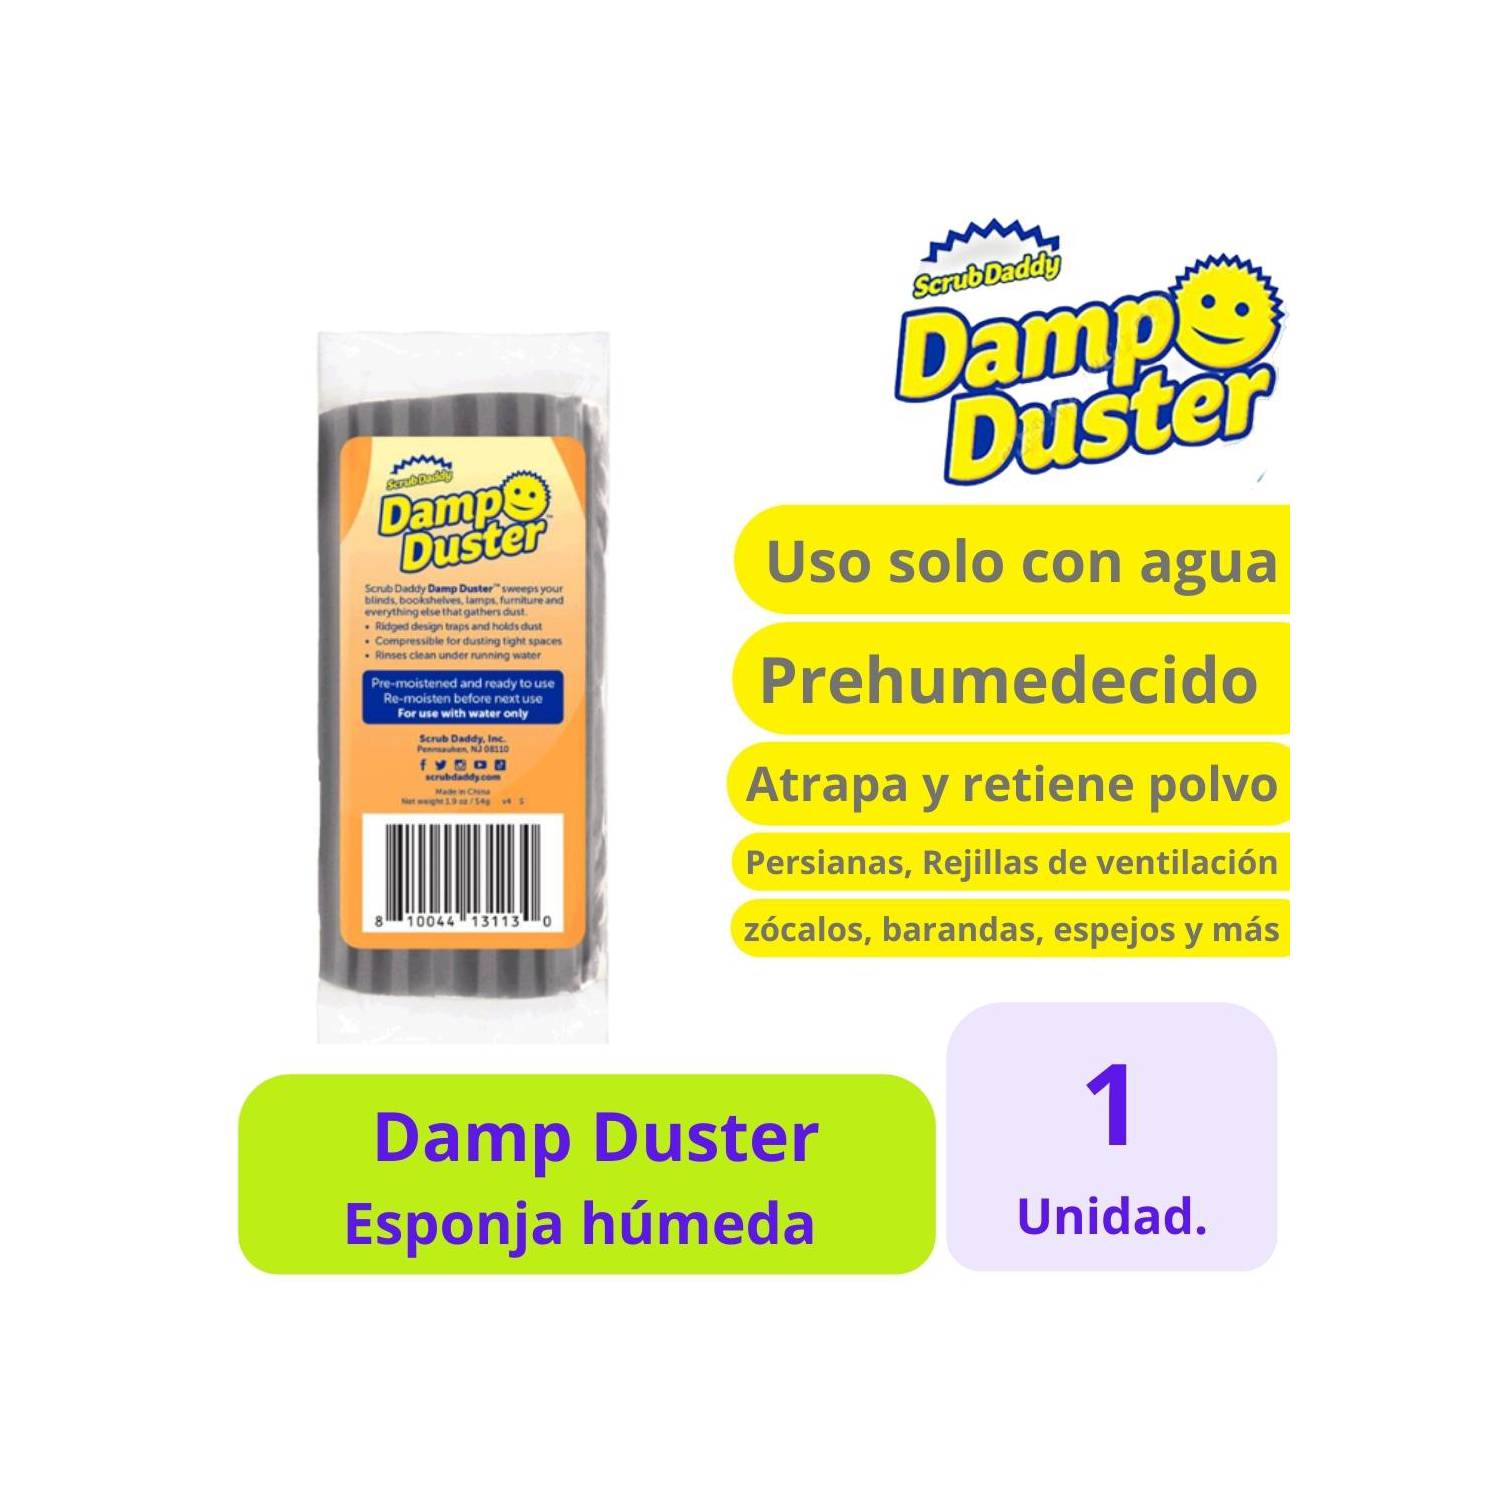 SCRUB DADDY Scrub Daddy Dump Duster - 1uds